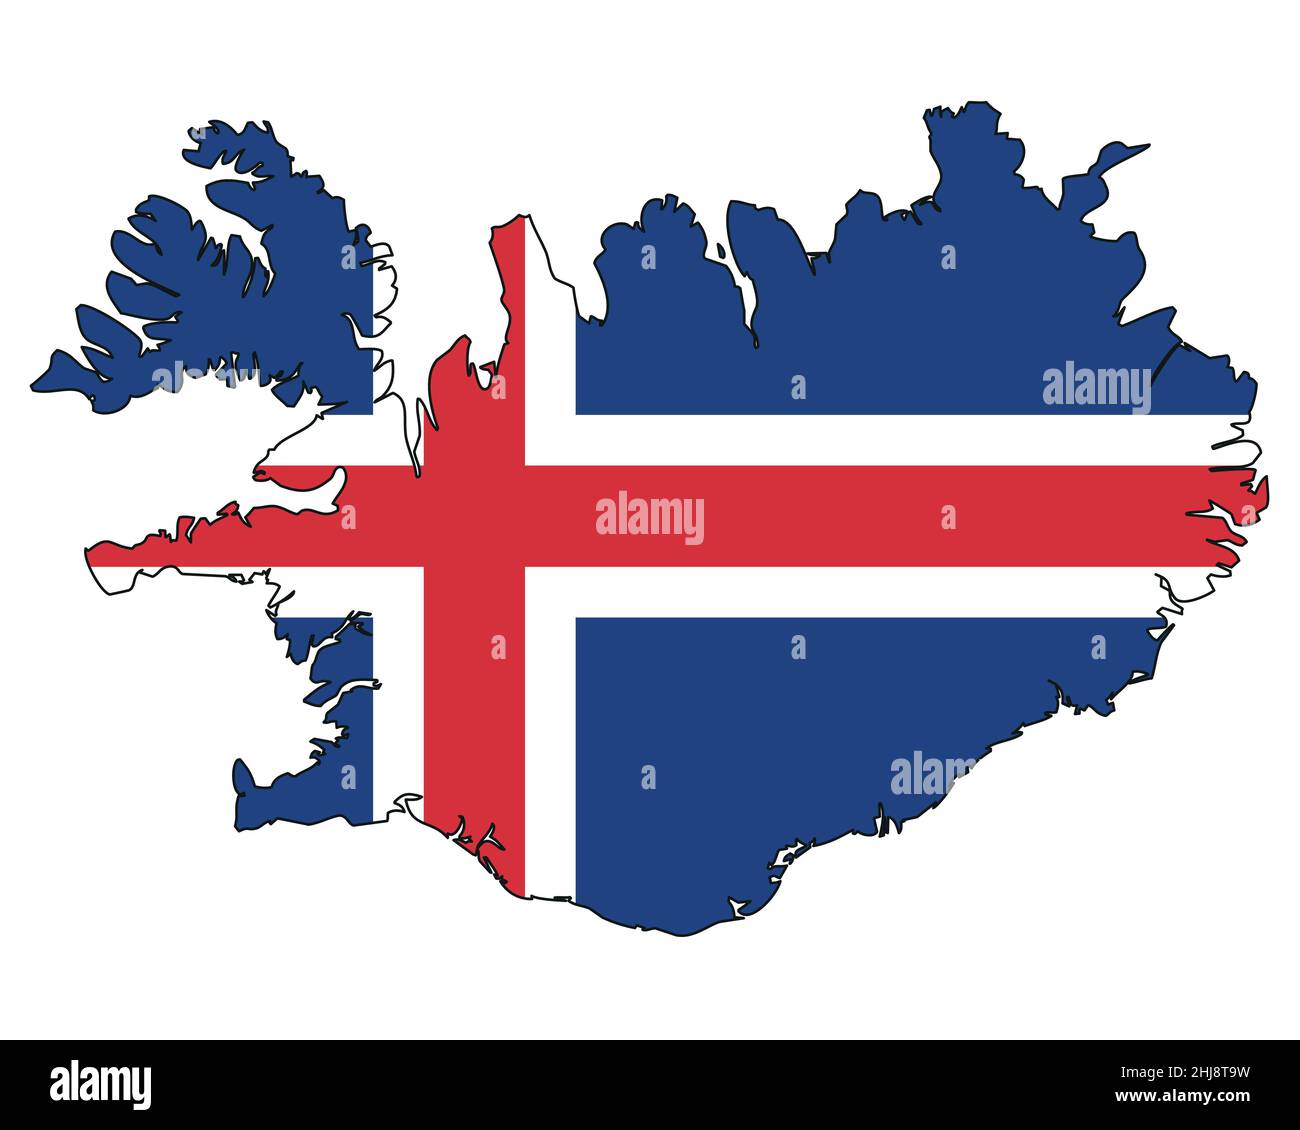 Island Karte mit Flagge - Umriss eines Staates mit einer Nationalflagge Stock Vektor